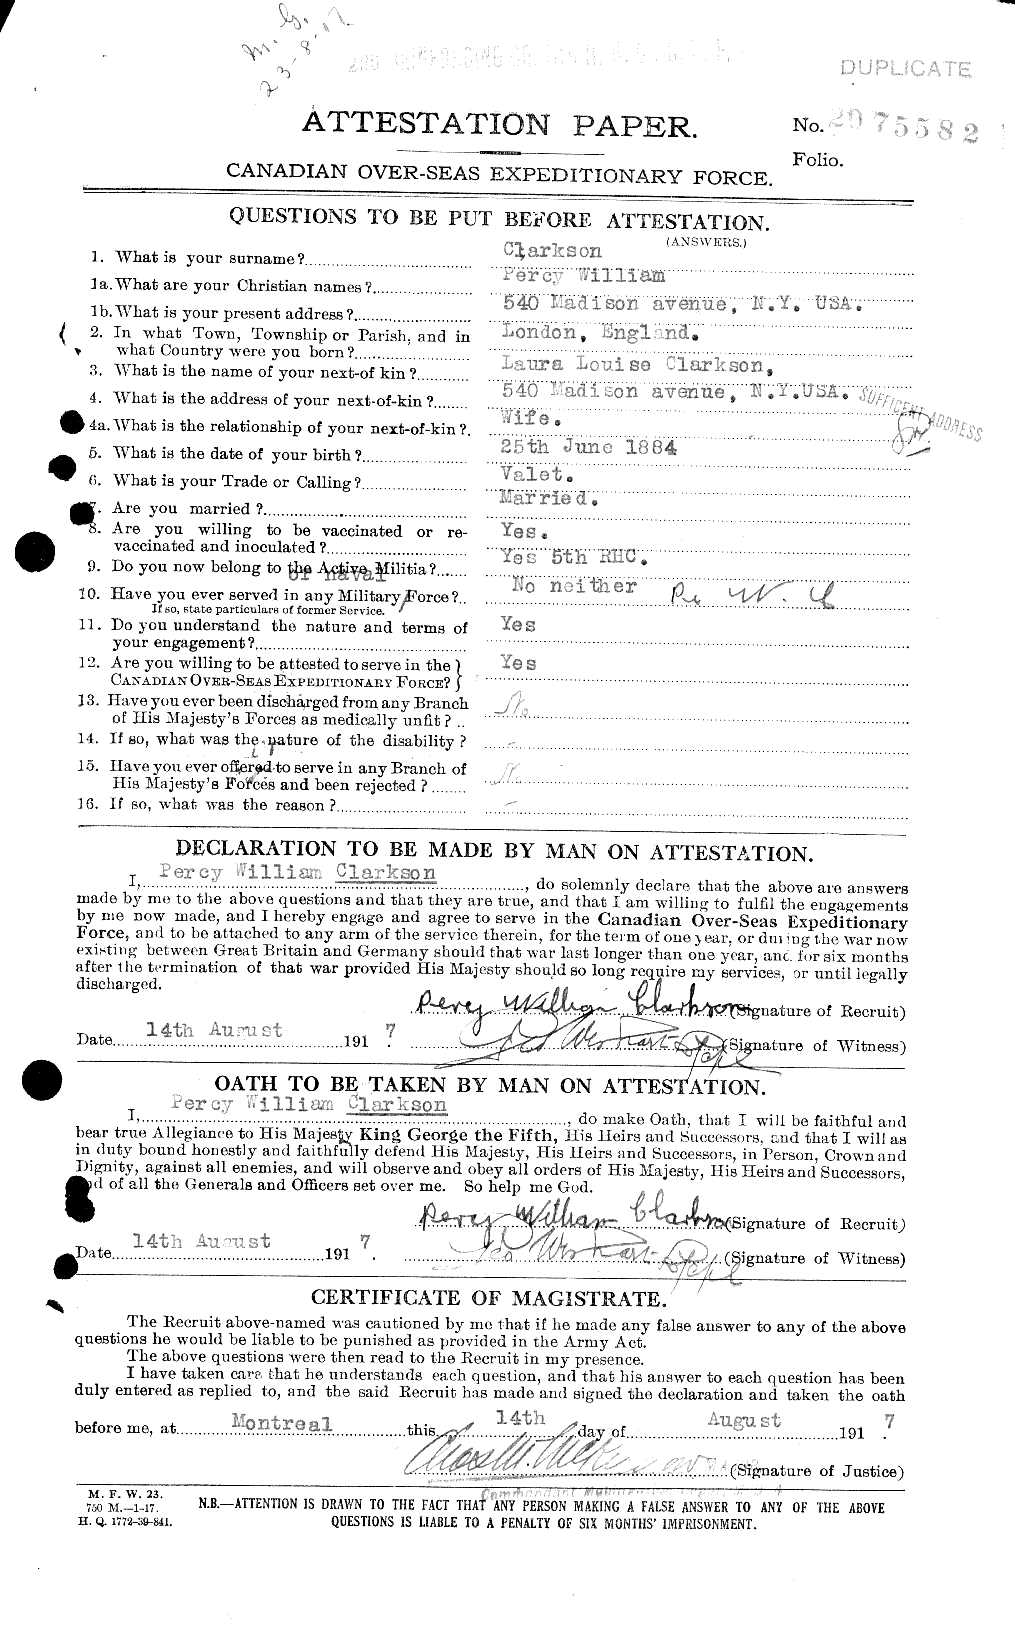 Dossiers du Personnel de la Première Guerre mondiale - CEC 021467a